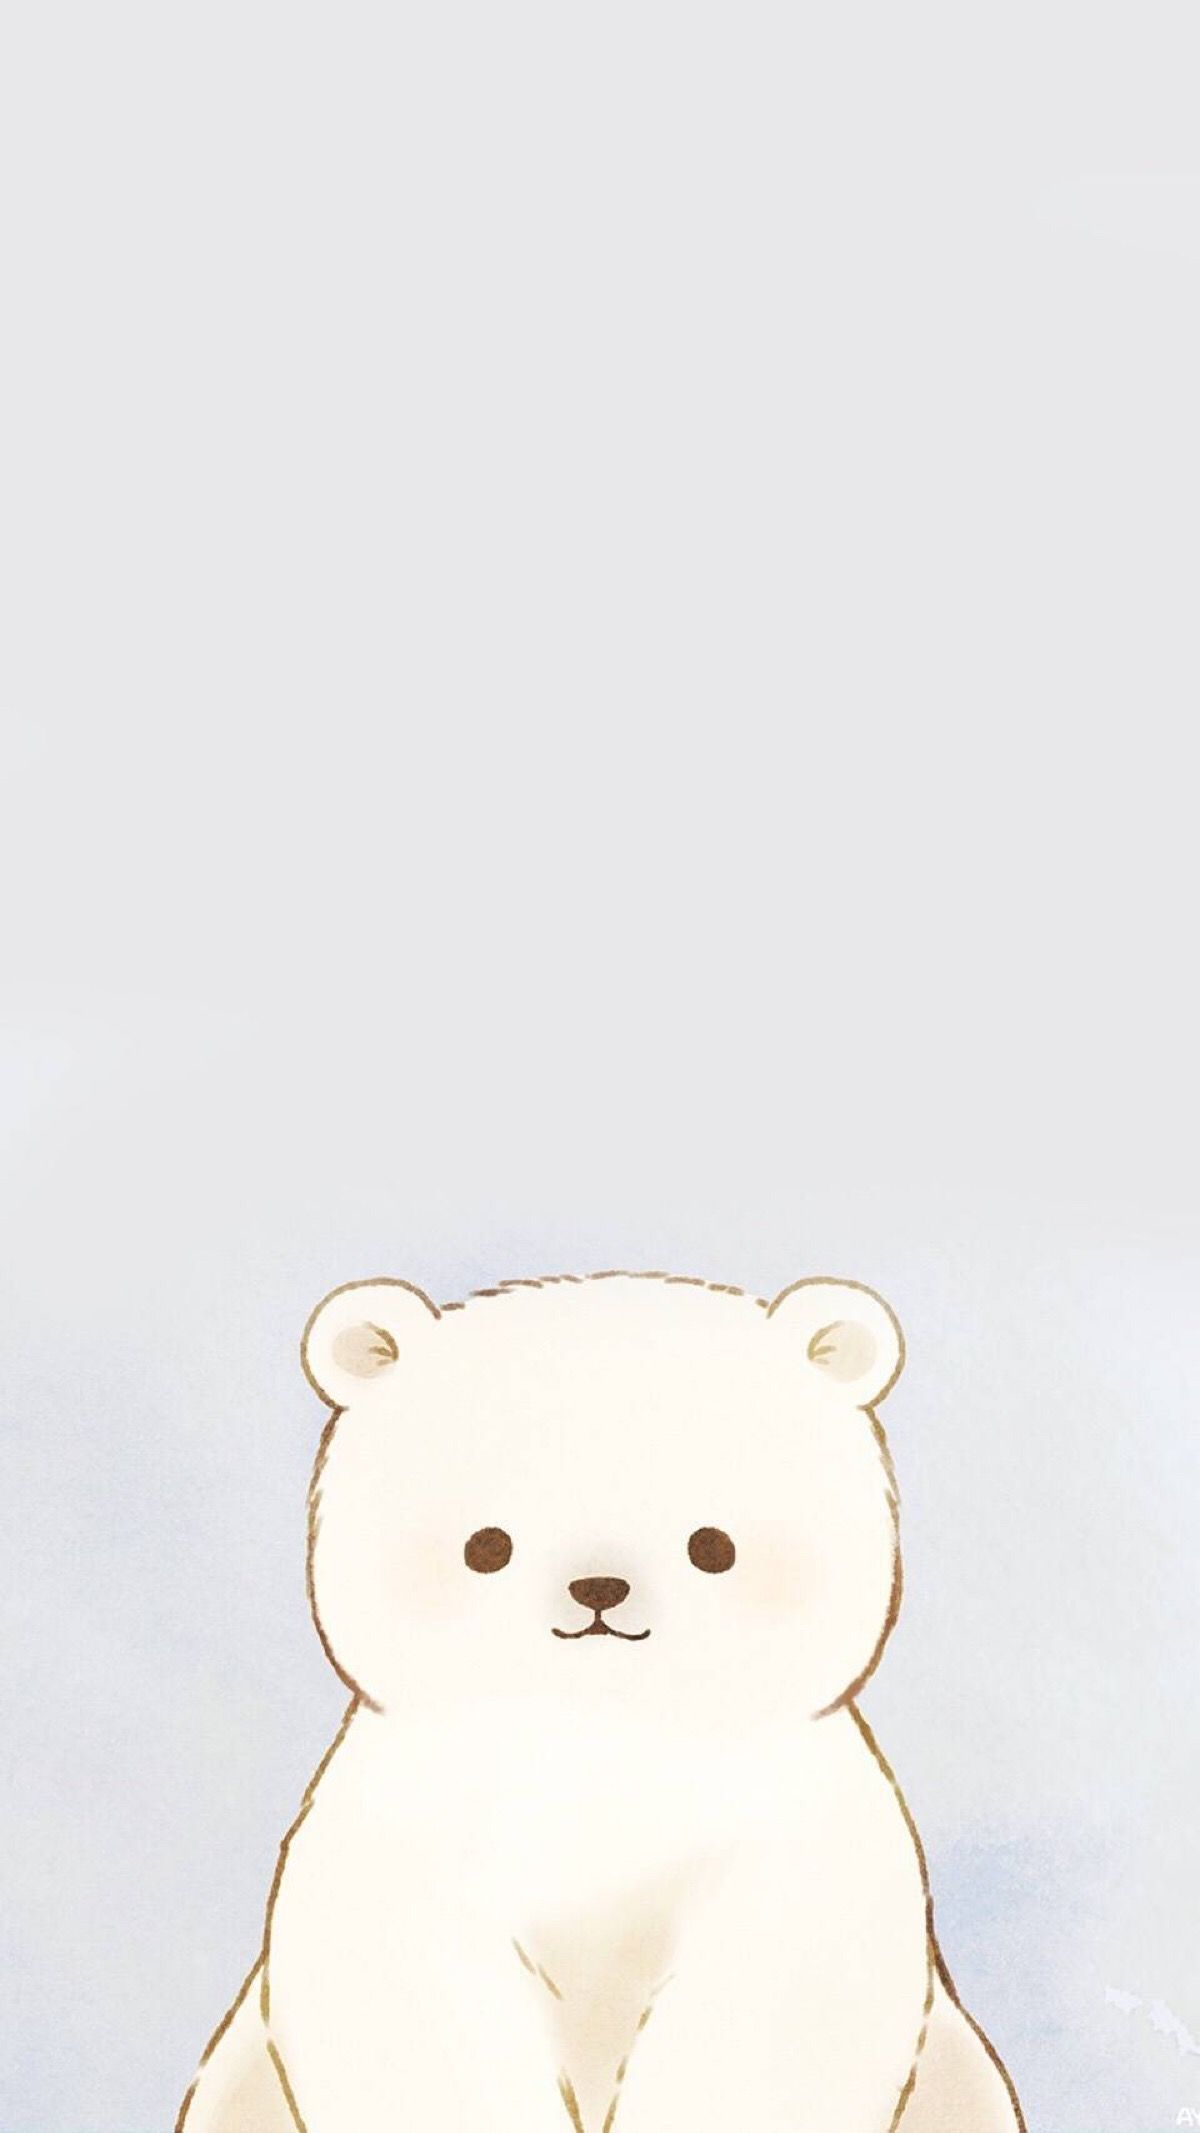 Cute Teddy Bear Aesthetic Wallpaper Free Cute Teddy Bear Aesthetic Background